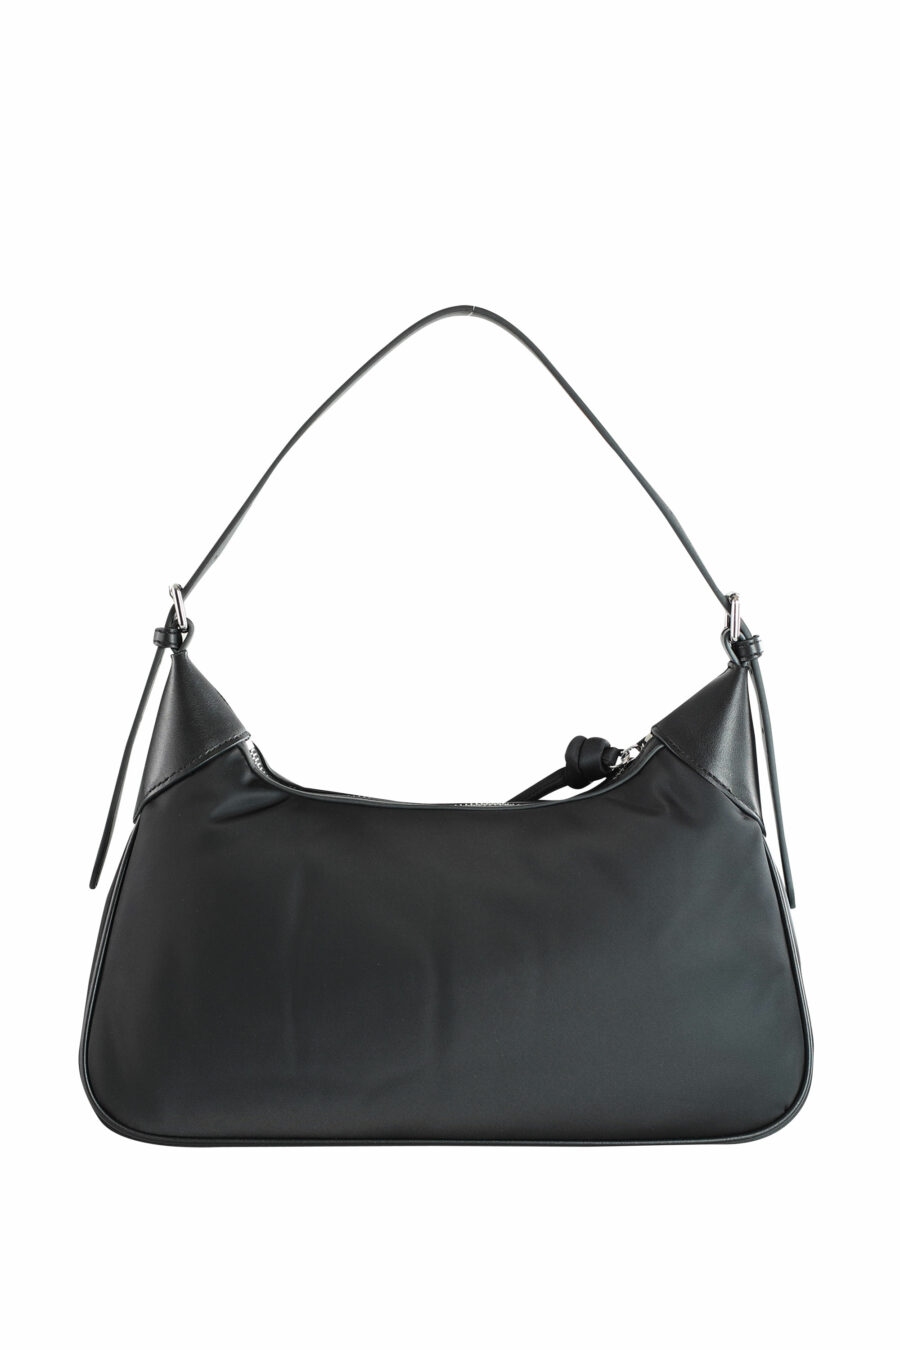 Black shoulder bag with "rue st guillaume" logo - 8720744103899 3